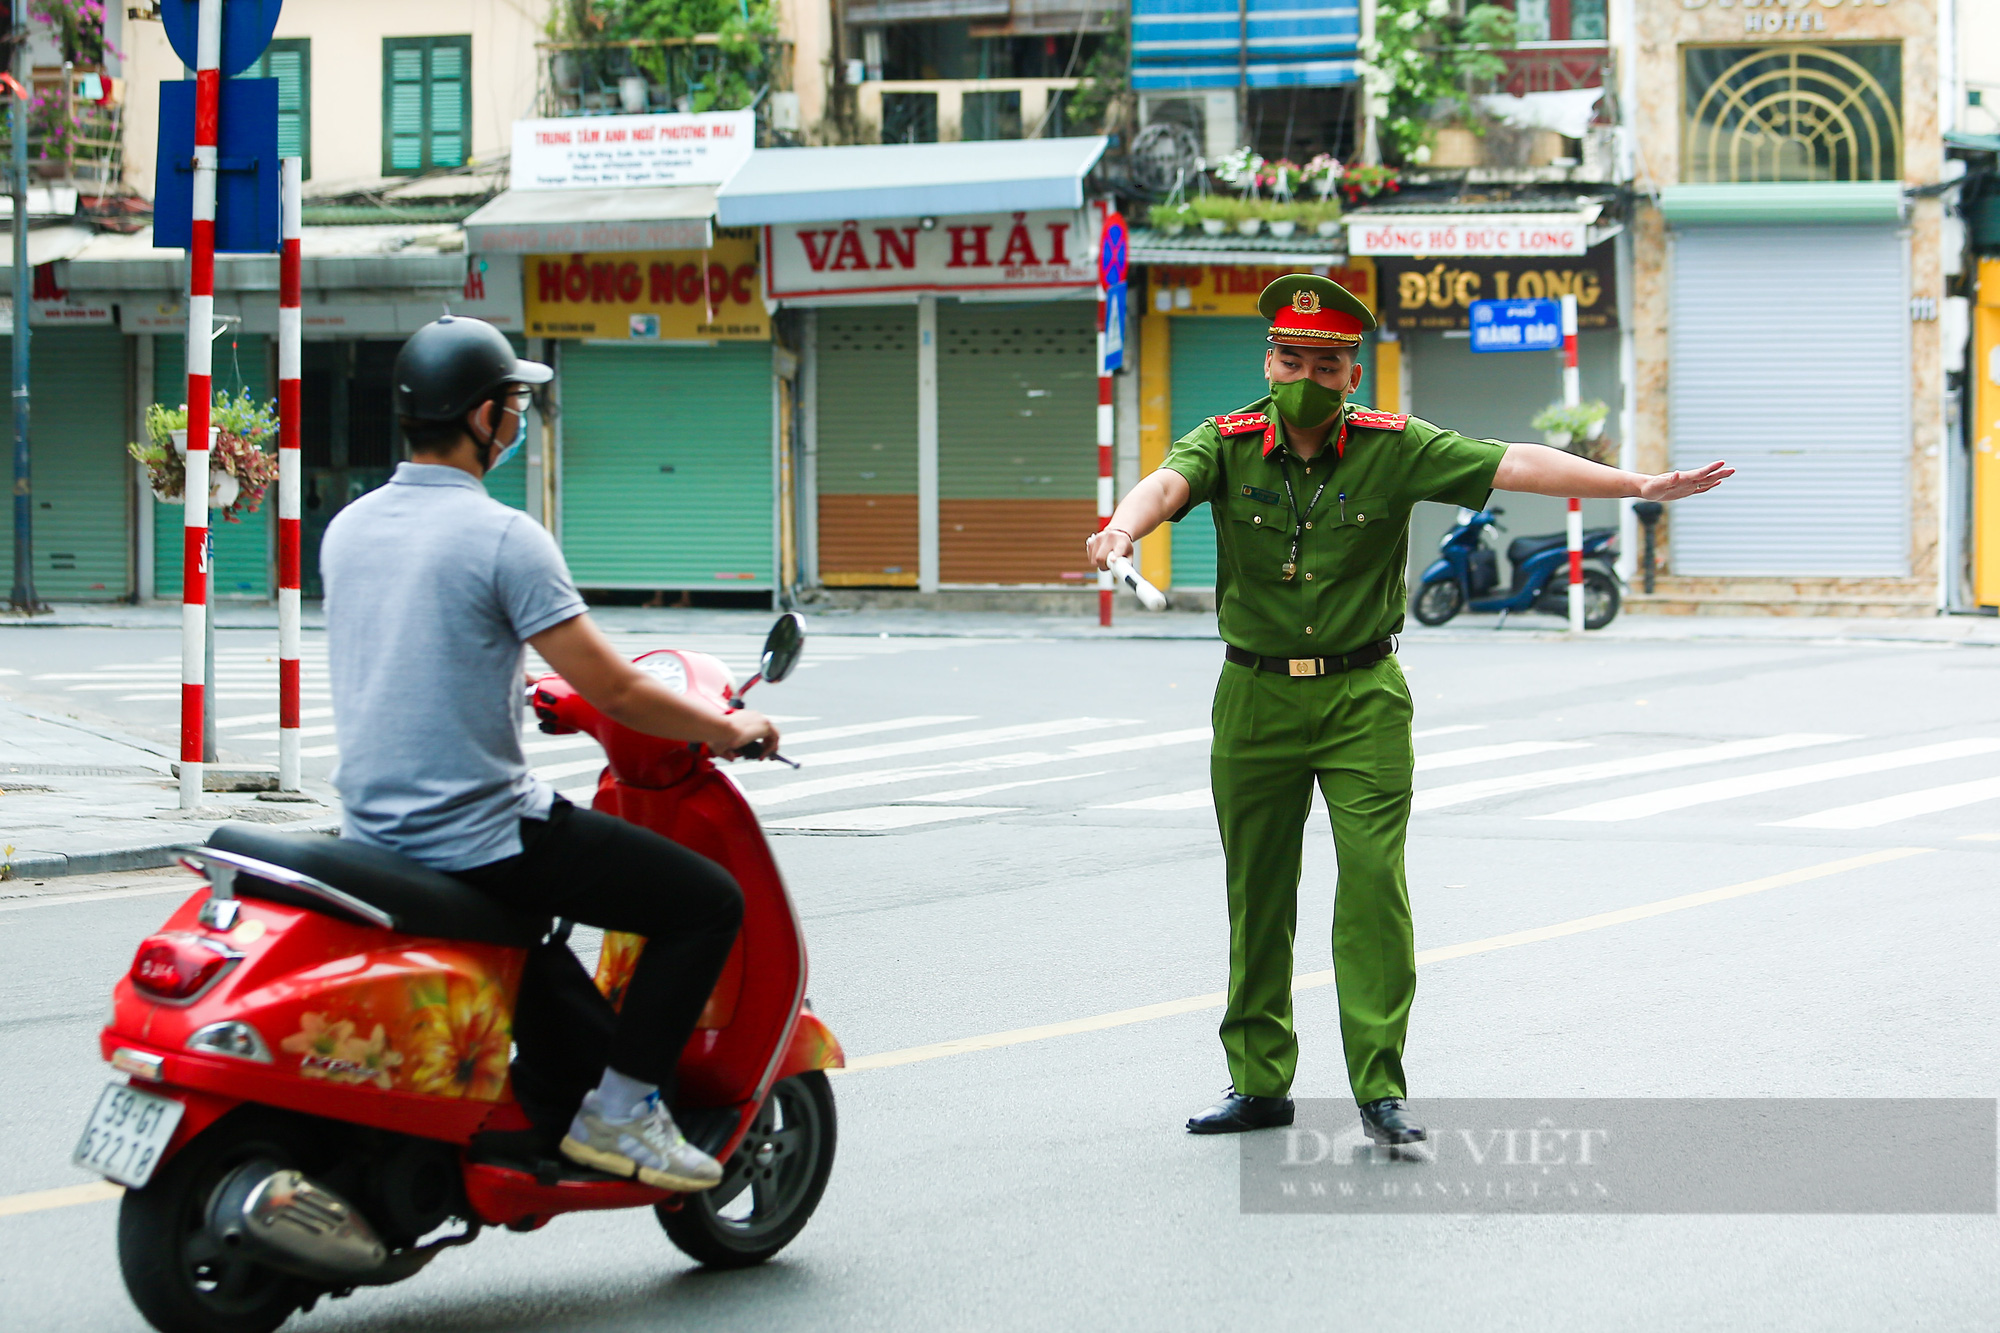 Áp dụng Chỉ thị 16 ở Hà Nội: Sang nhà hàng xóm giúp công việc có bị xử phạt không? - Ảnh 1.